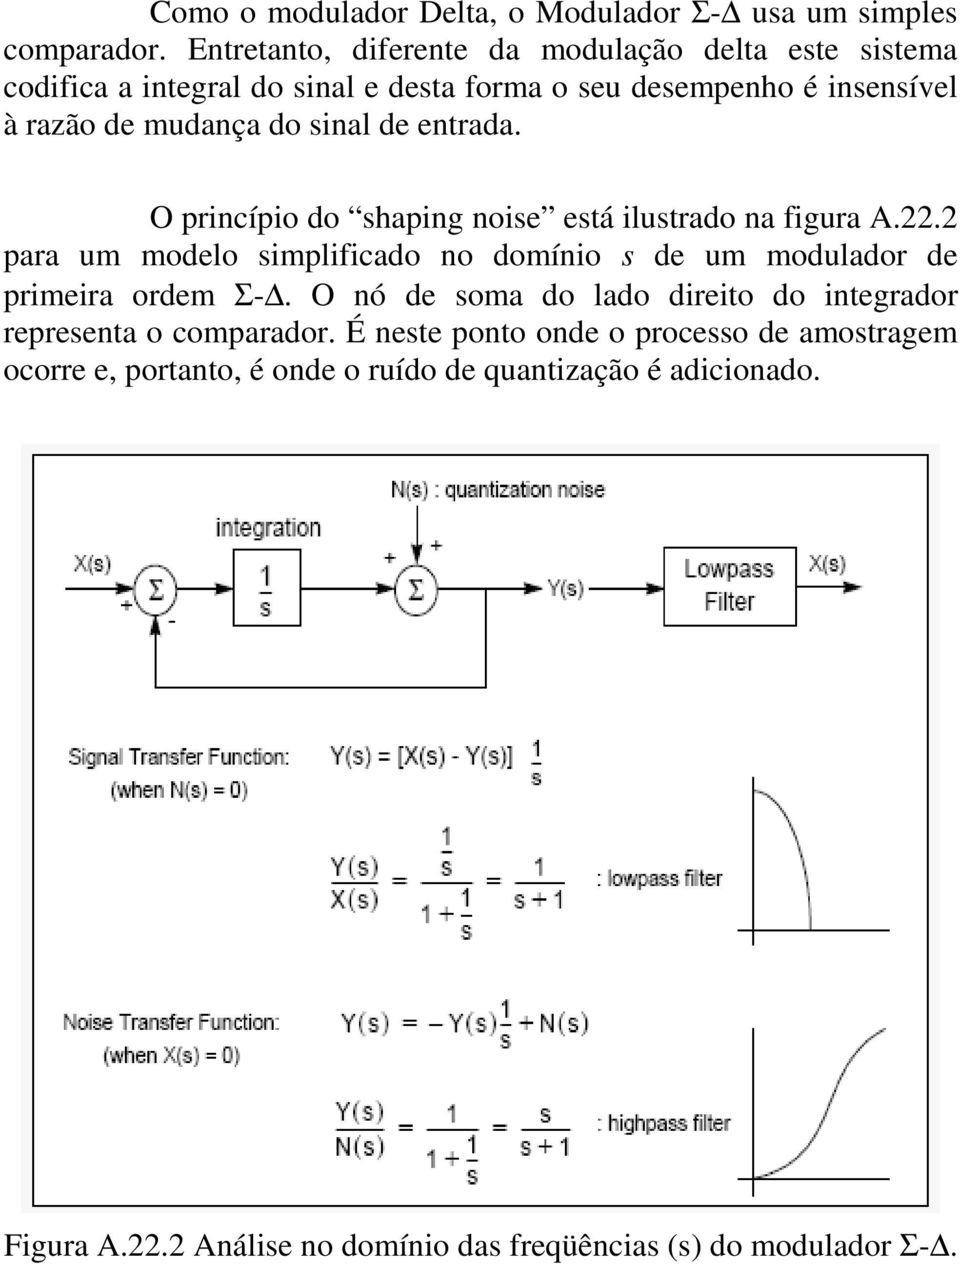 de entrada. O princípio do shaping noise está ilustrado na figura A.22.2 para um modelo simplificado no domínio s de um modulador de primeira ordem Σ-.